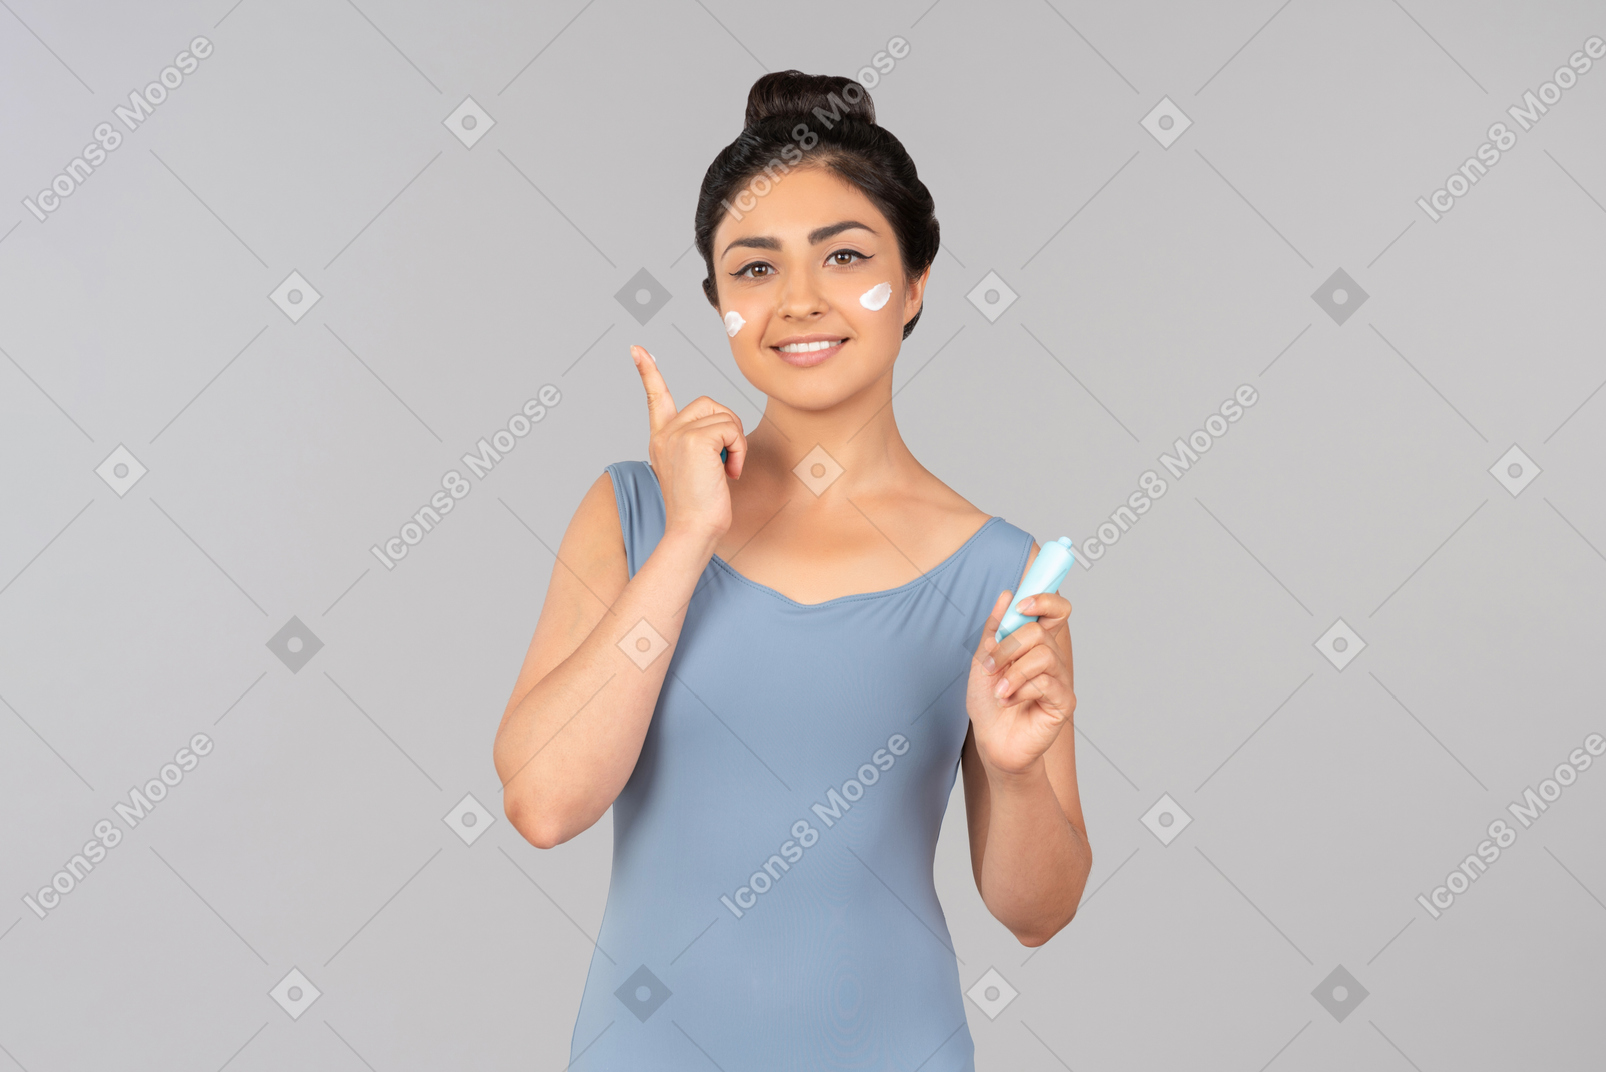 应用面霜的蓝色无袖衫的年轻印地安妇女